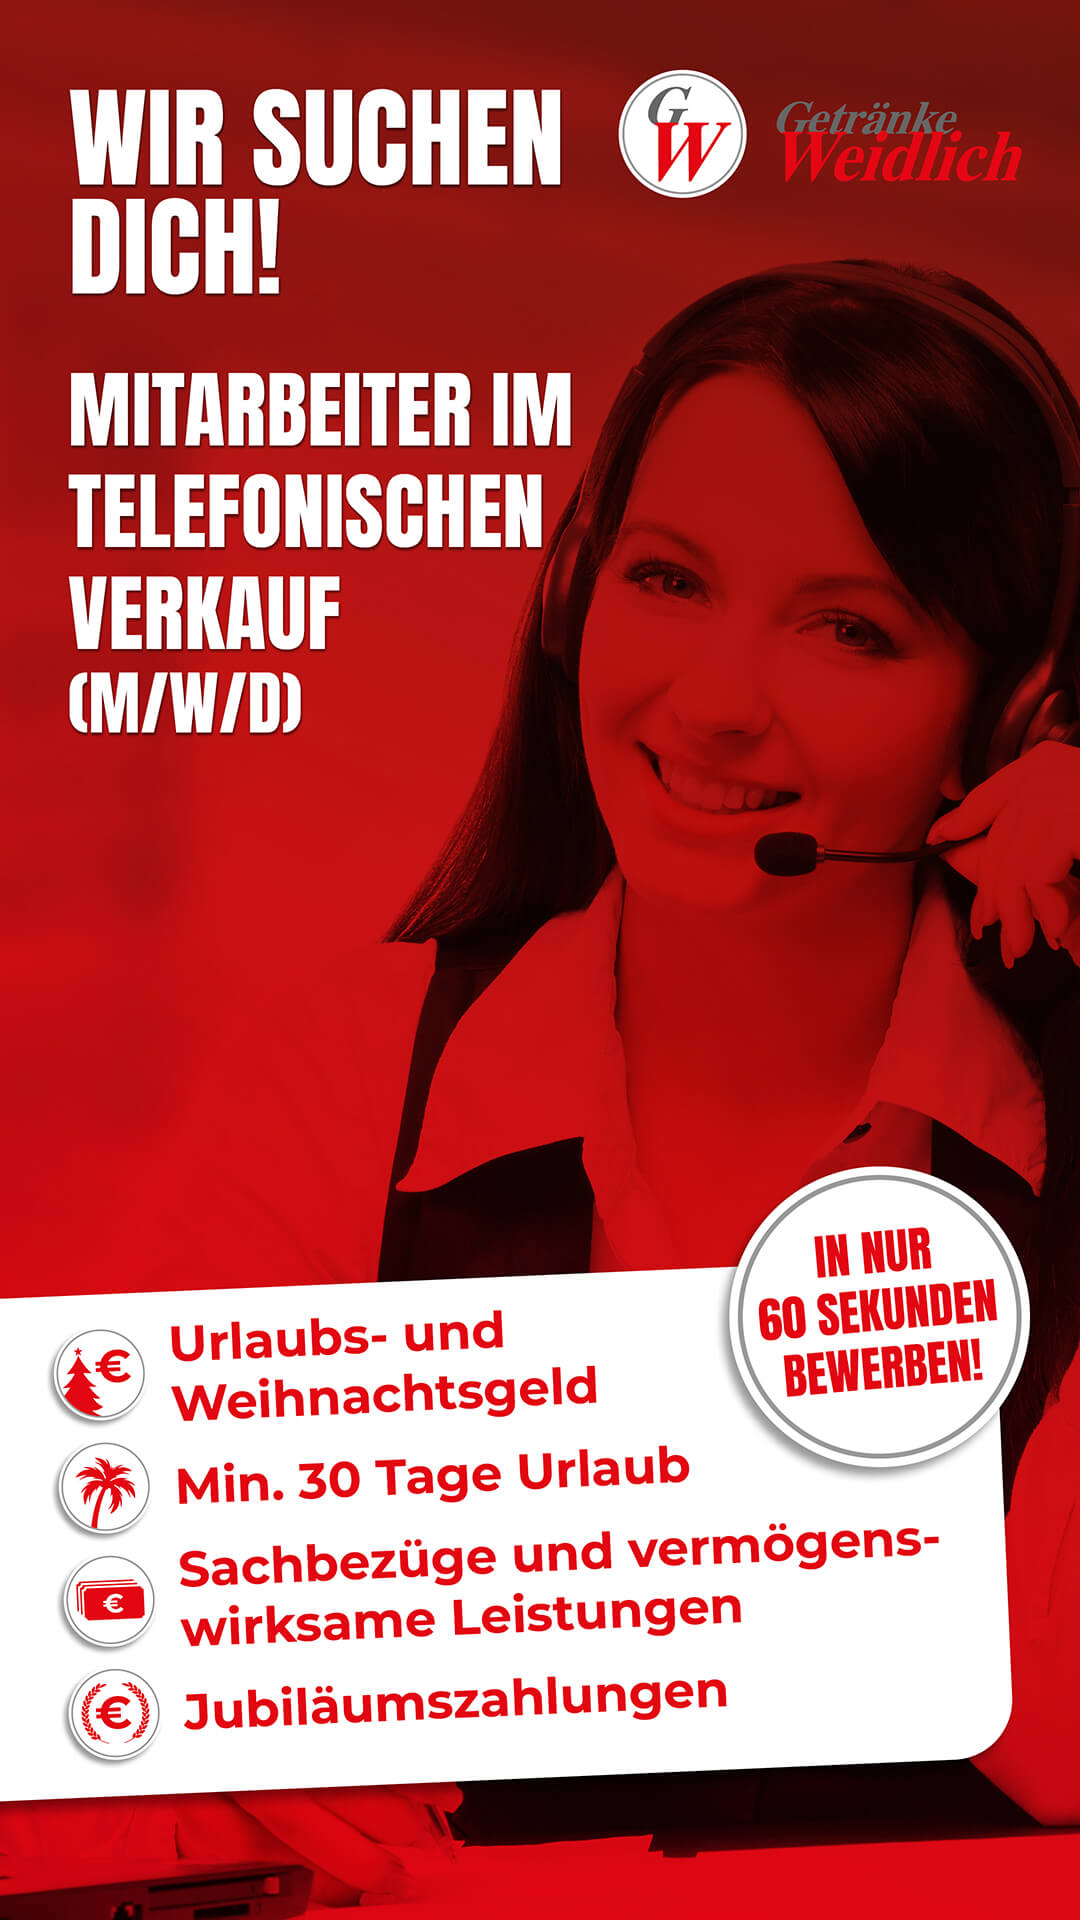 Digital Recruiting Creative des Kunden "Getränke Weidlich". Für die Stelle des Mitarbeiters im telefonischen Verkaufs.